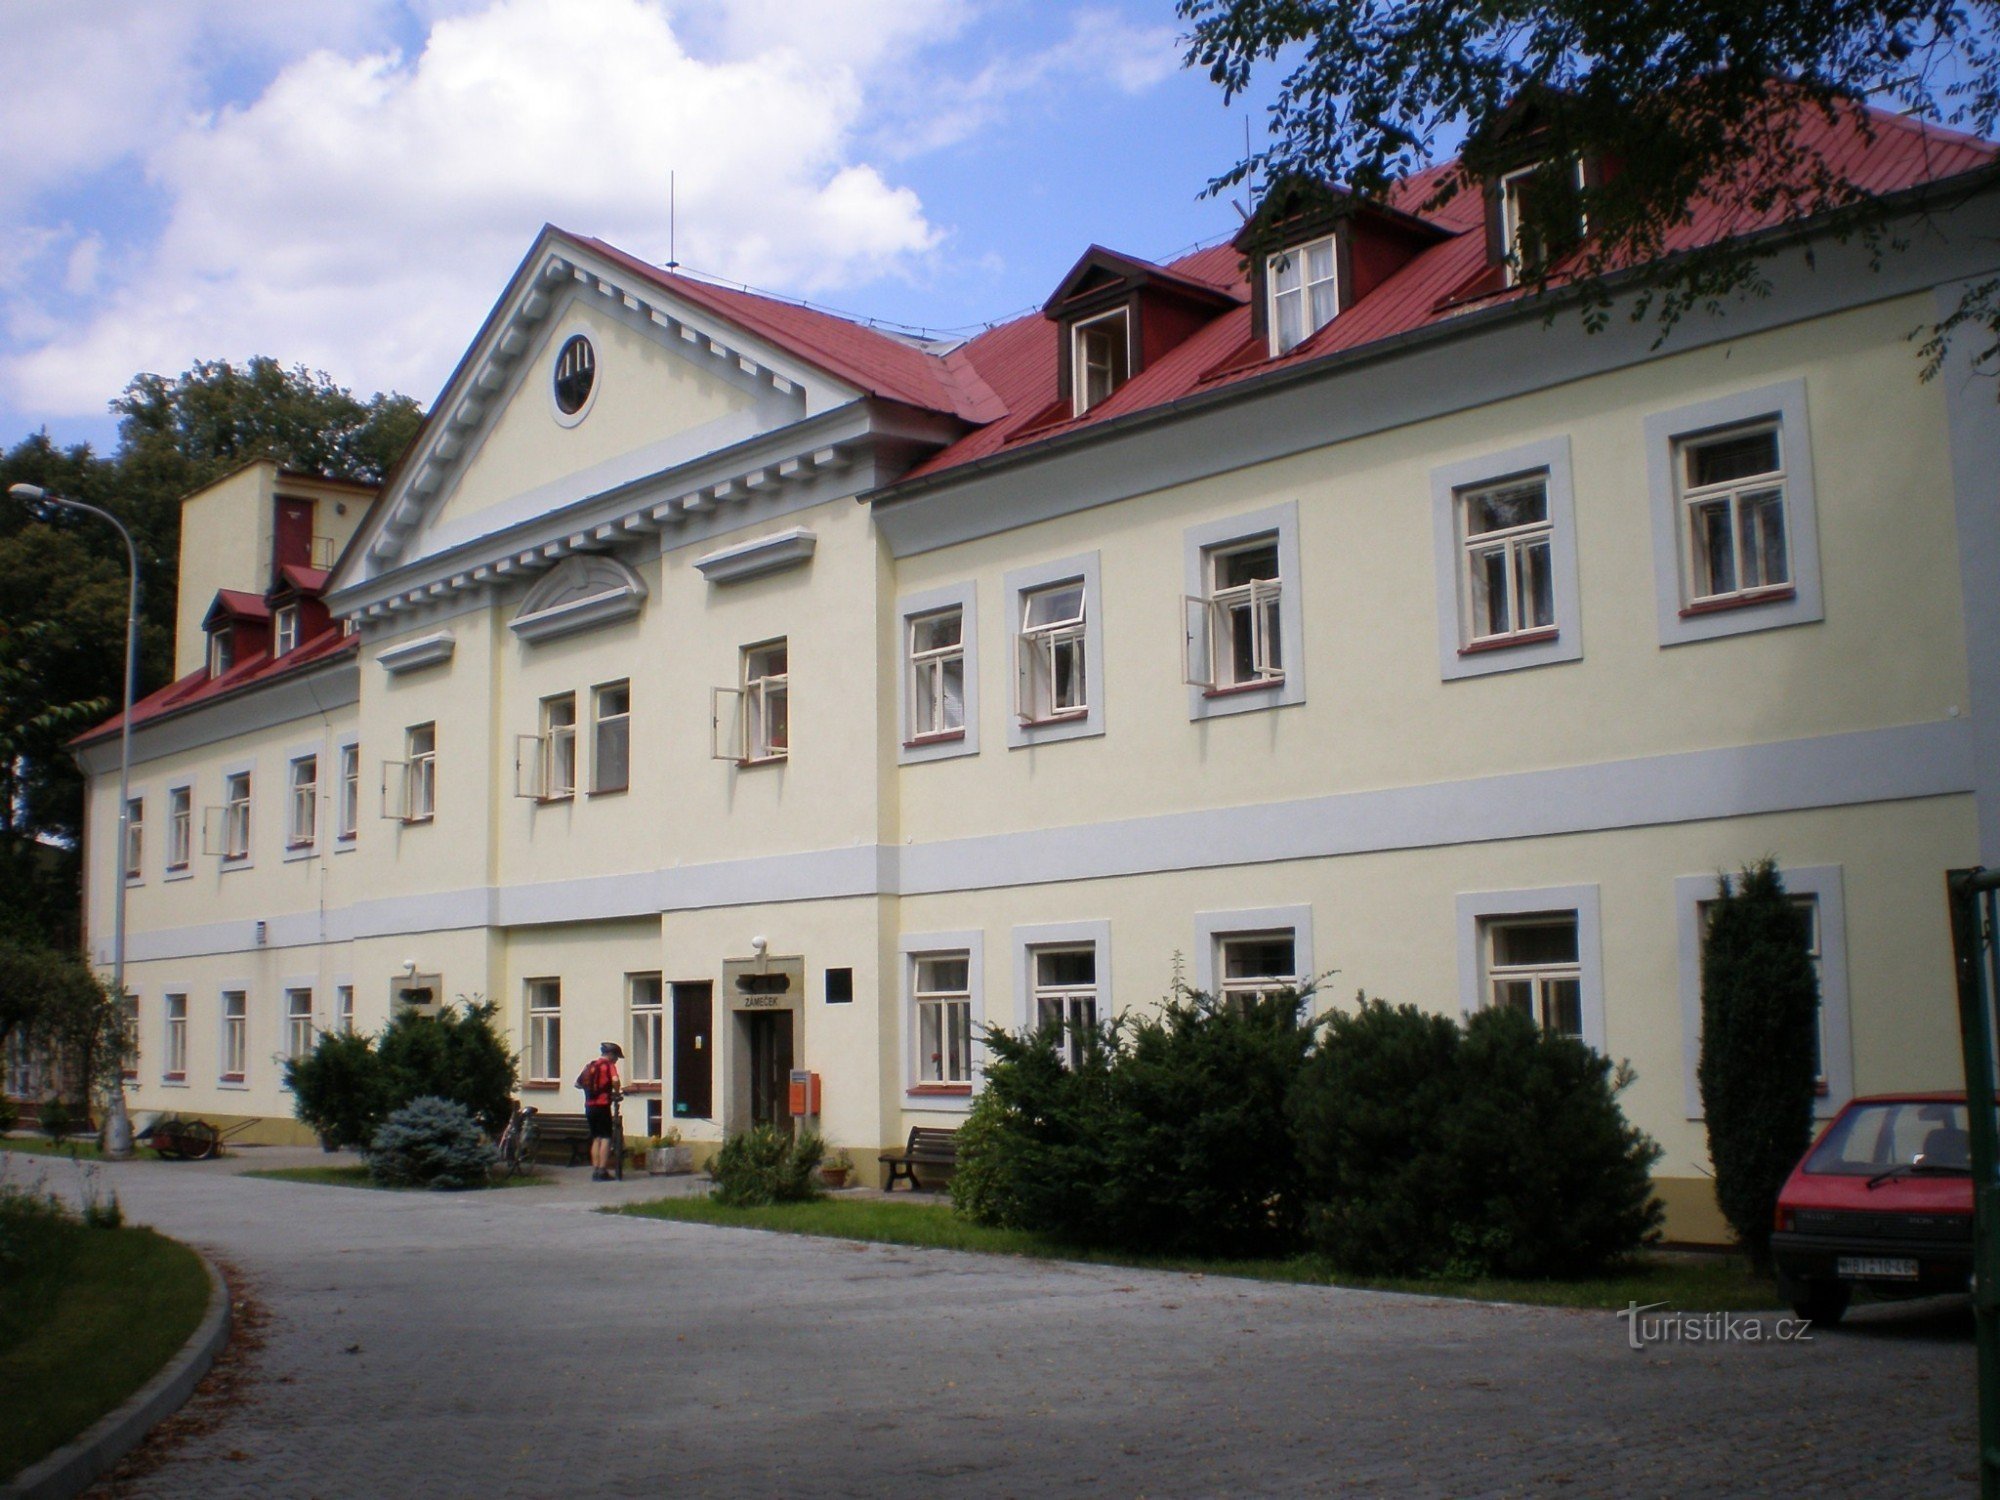 Borohrádek - zámek